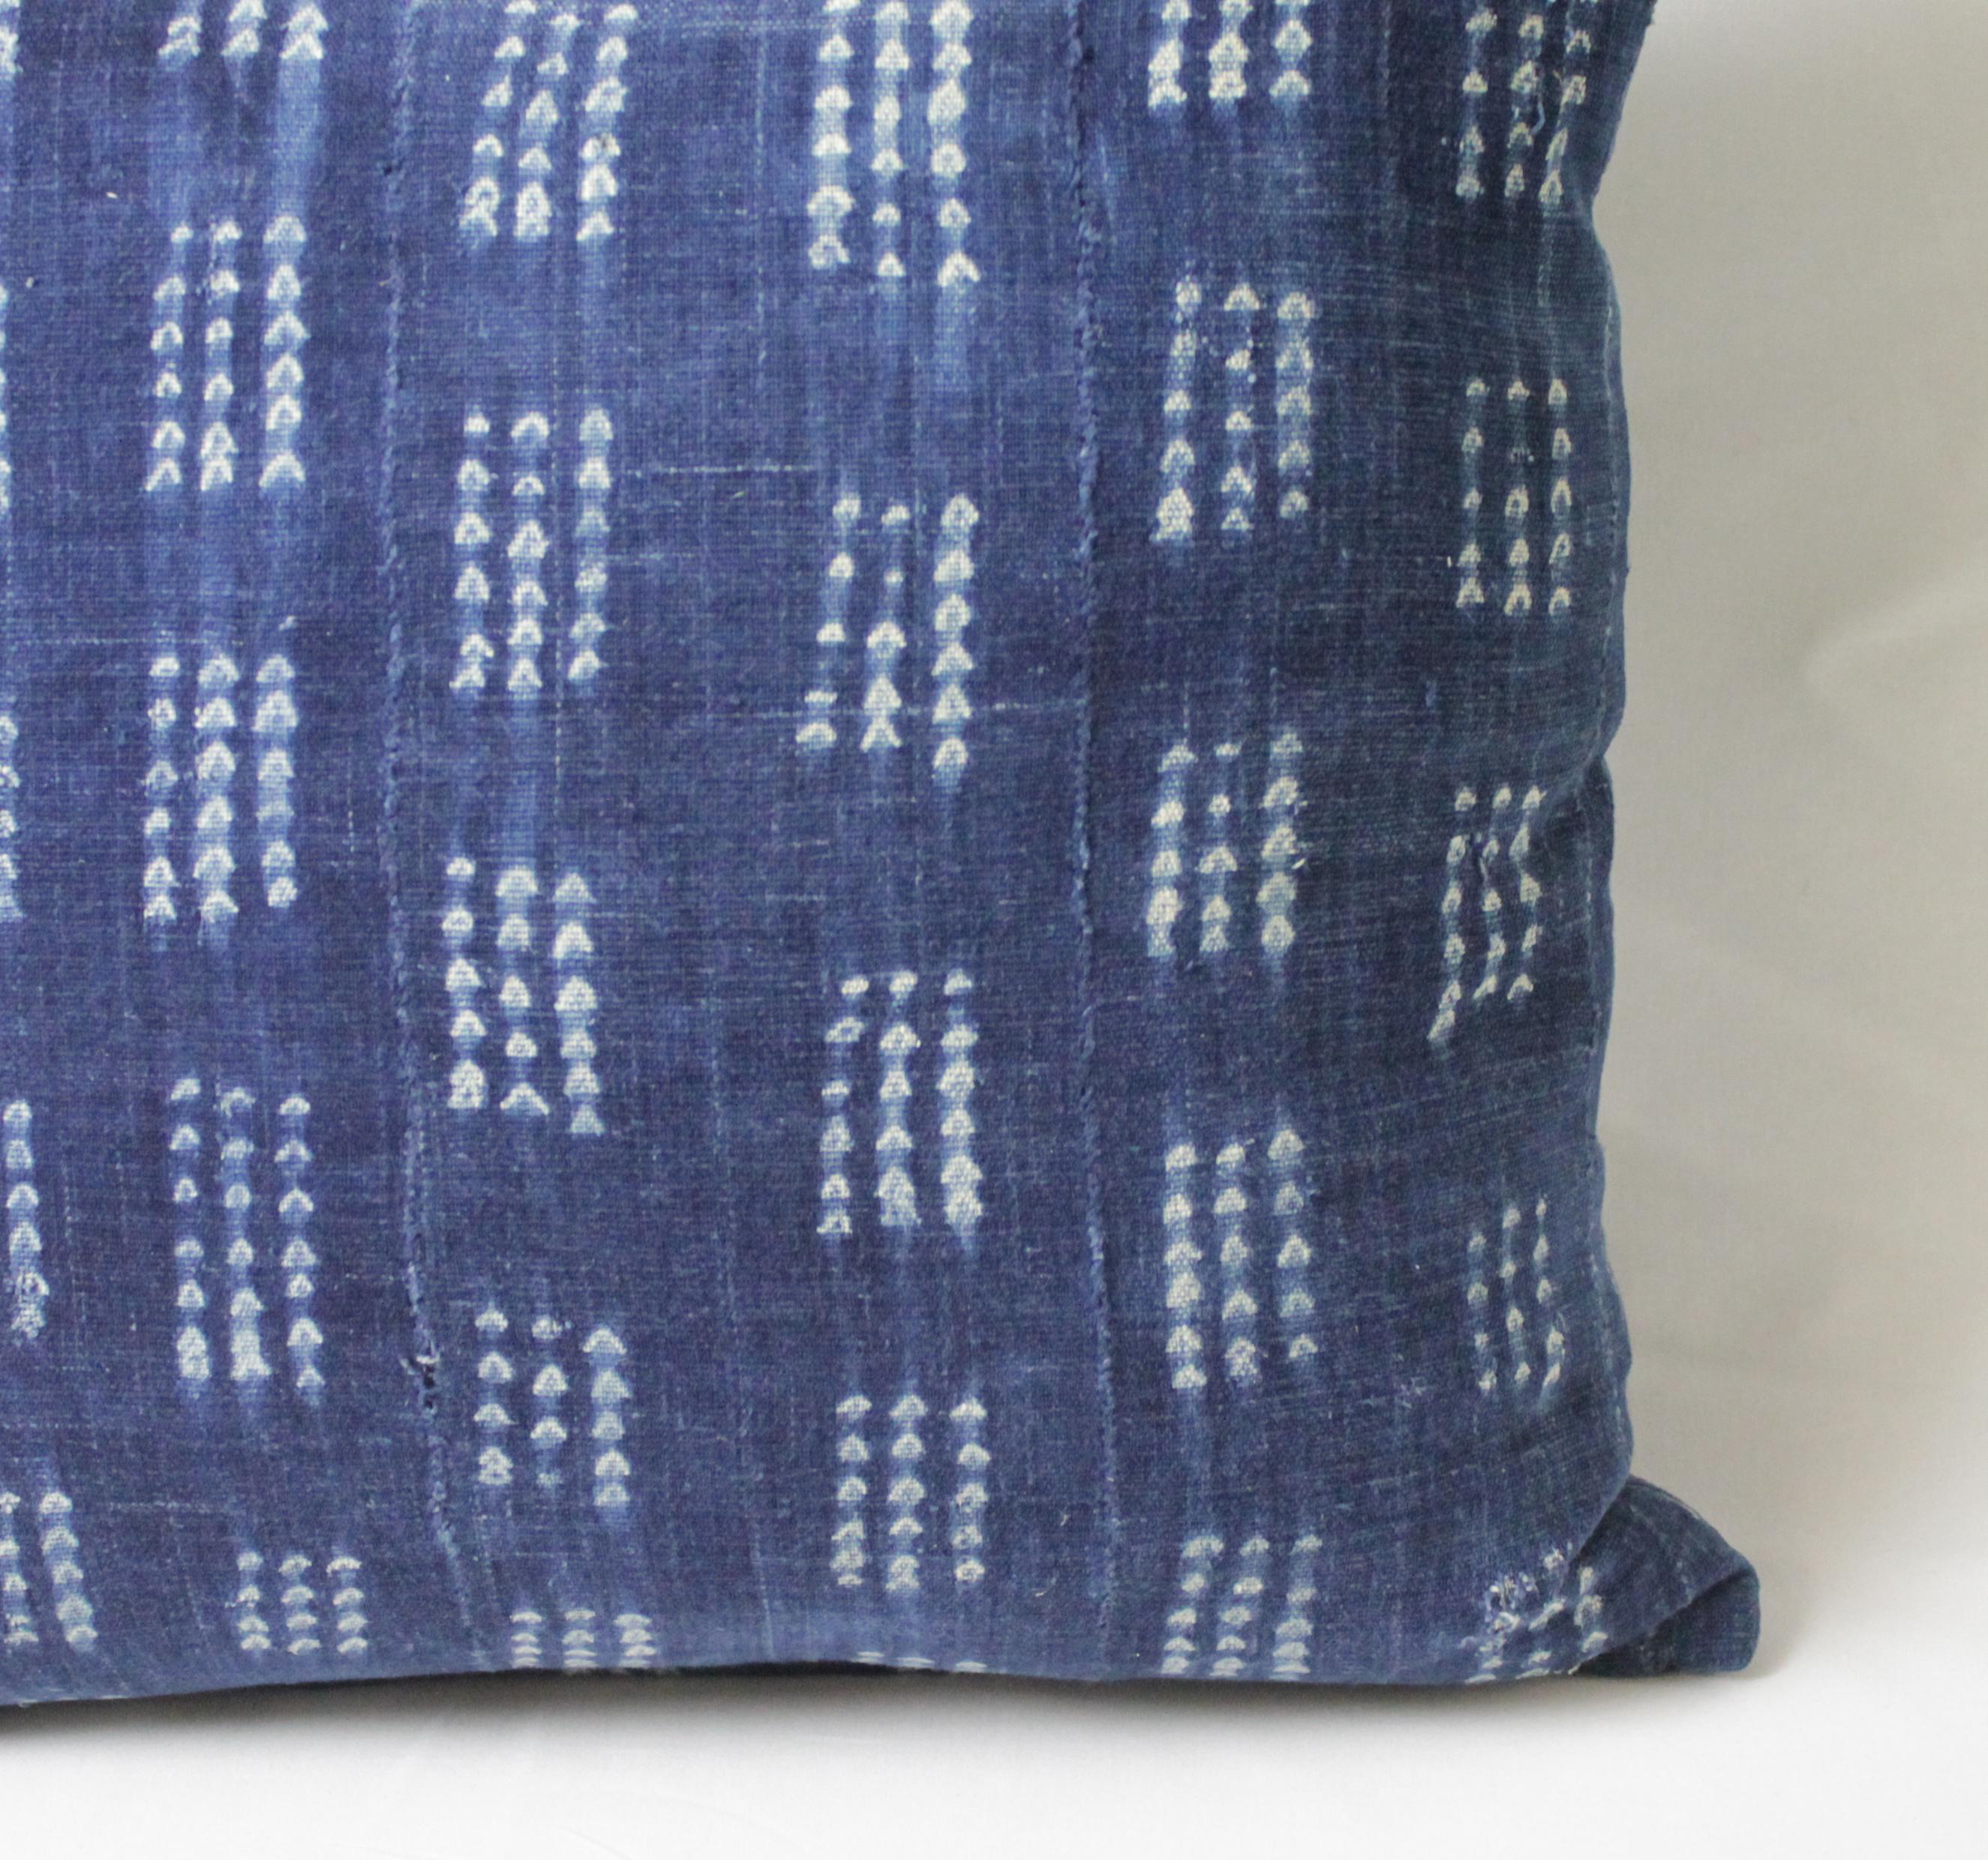 Cotton Antique Indigo Blue and White Batik Accent Pillow